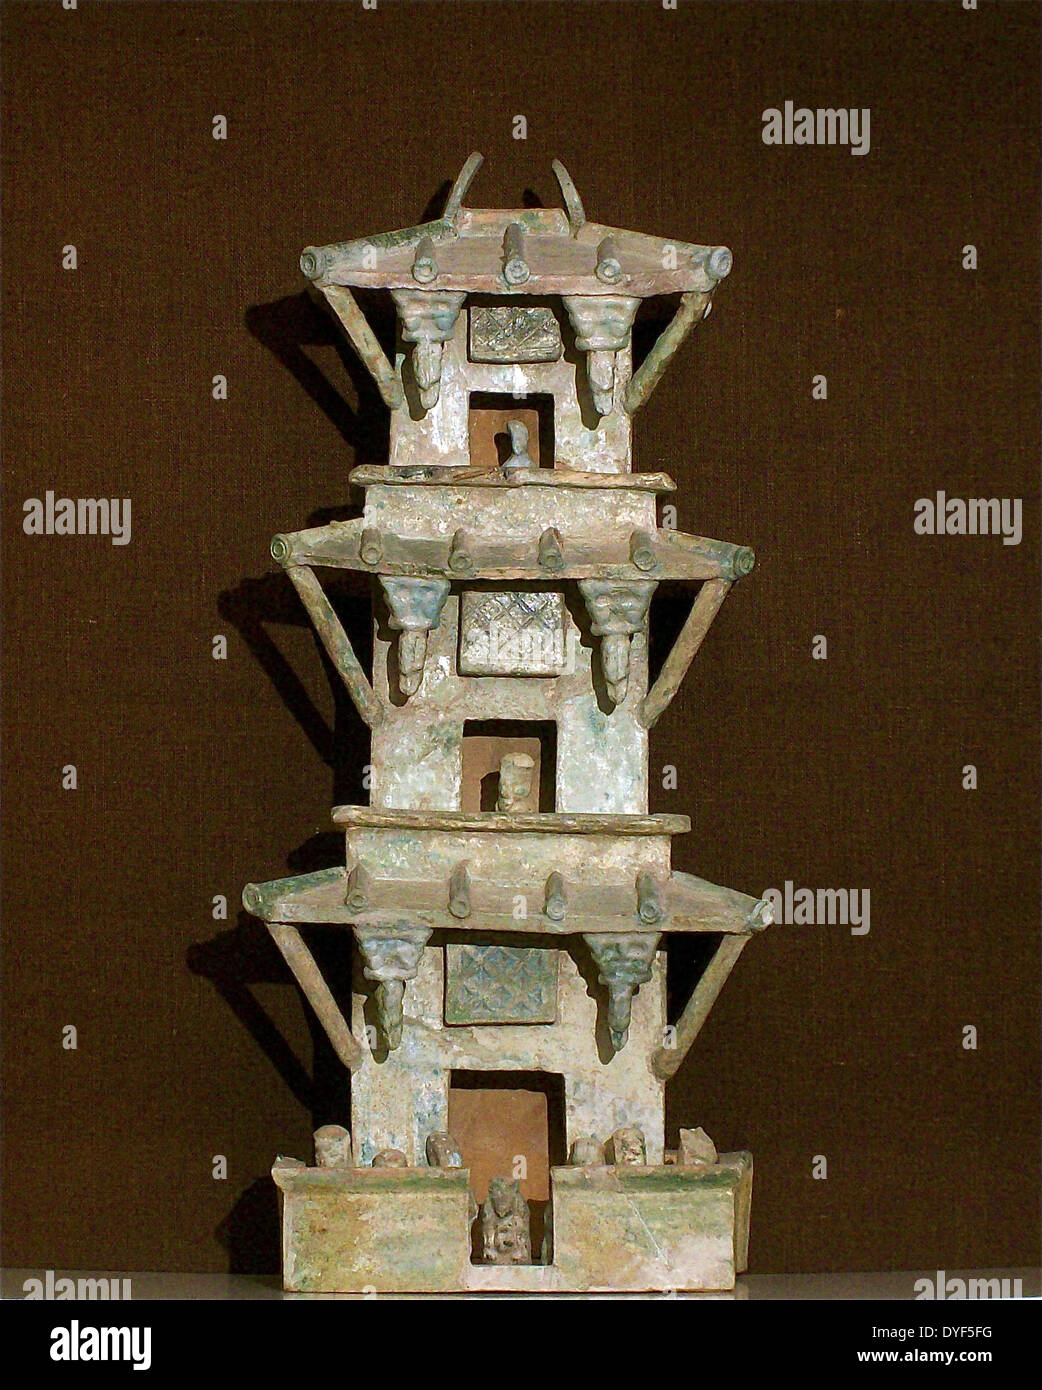 La antigua China: Watch Tower, verde-cerámica vidriada, dinastía oriental, 24-220 AD. La torre de tres fue el prototipo la pagoda Fotografía de stock Alamy